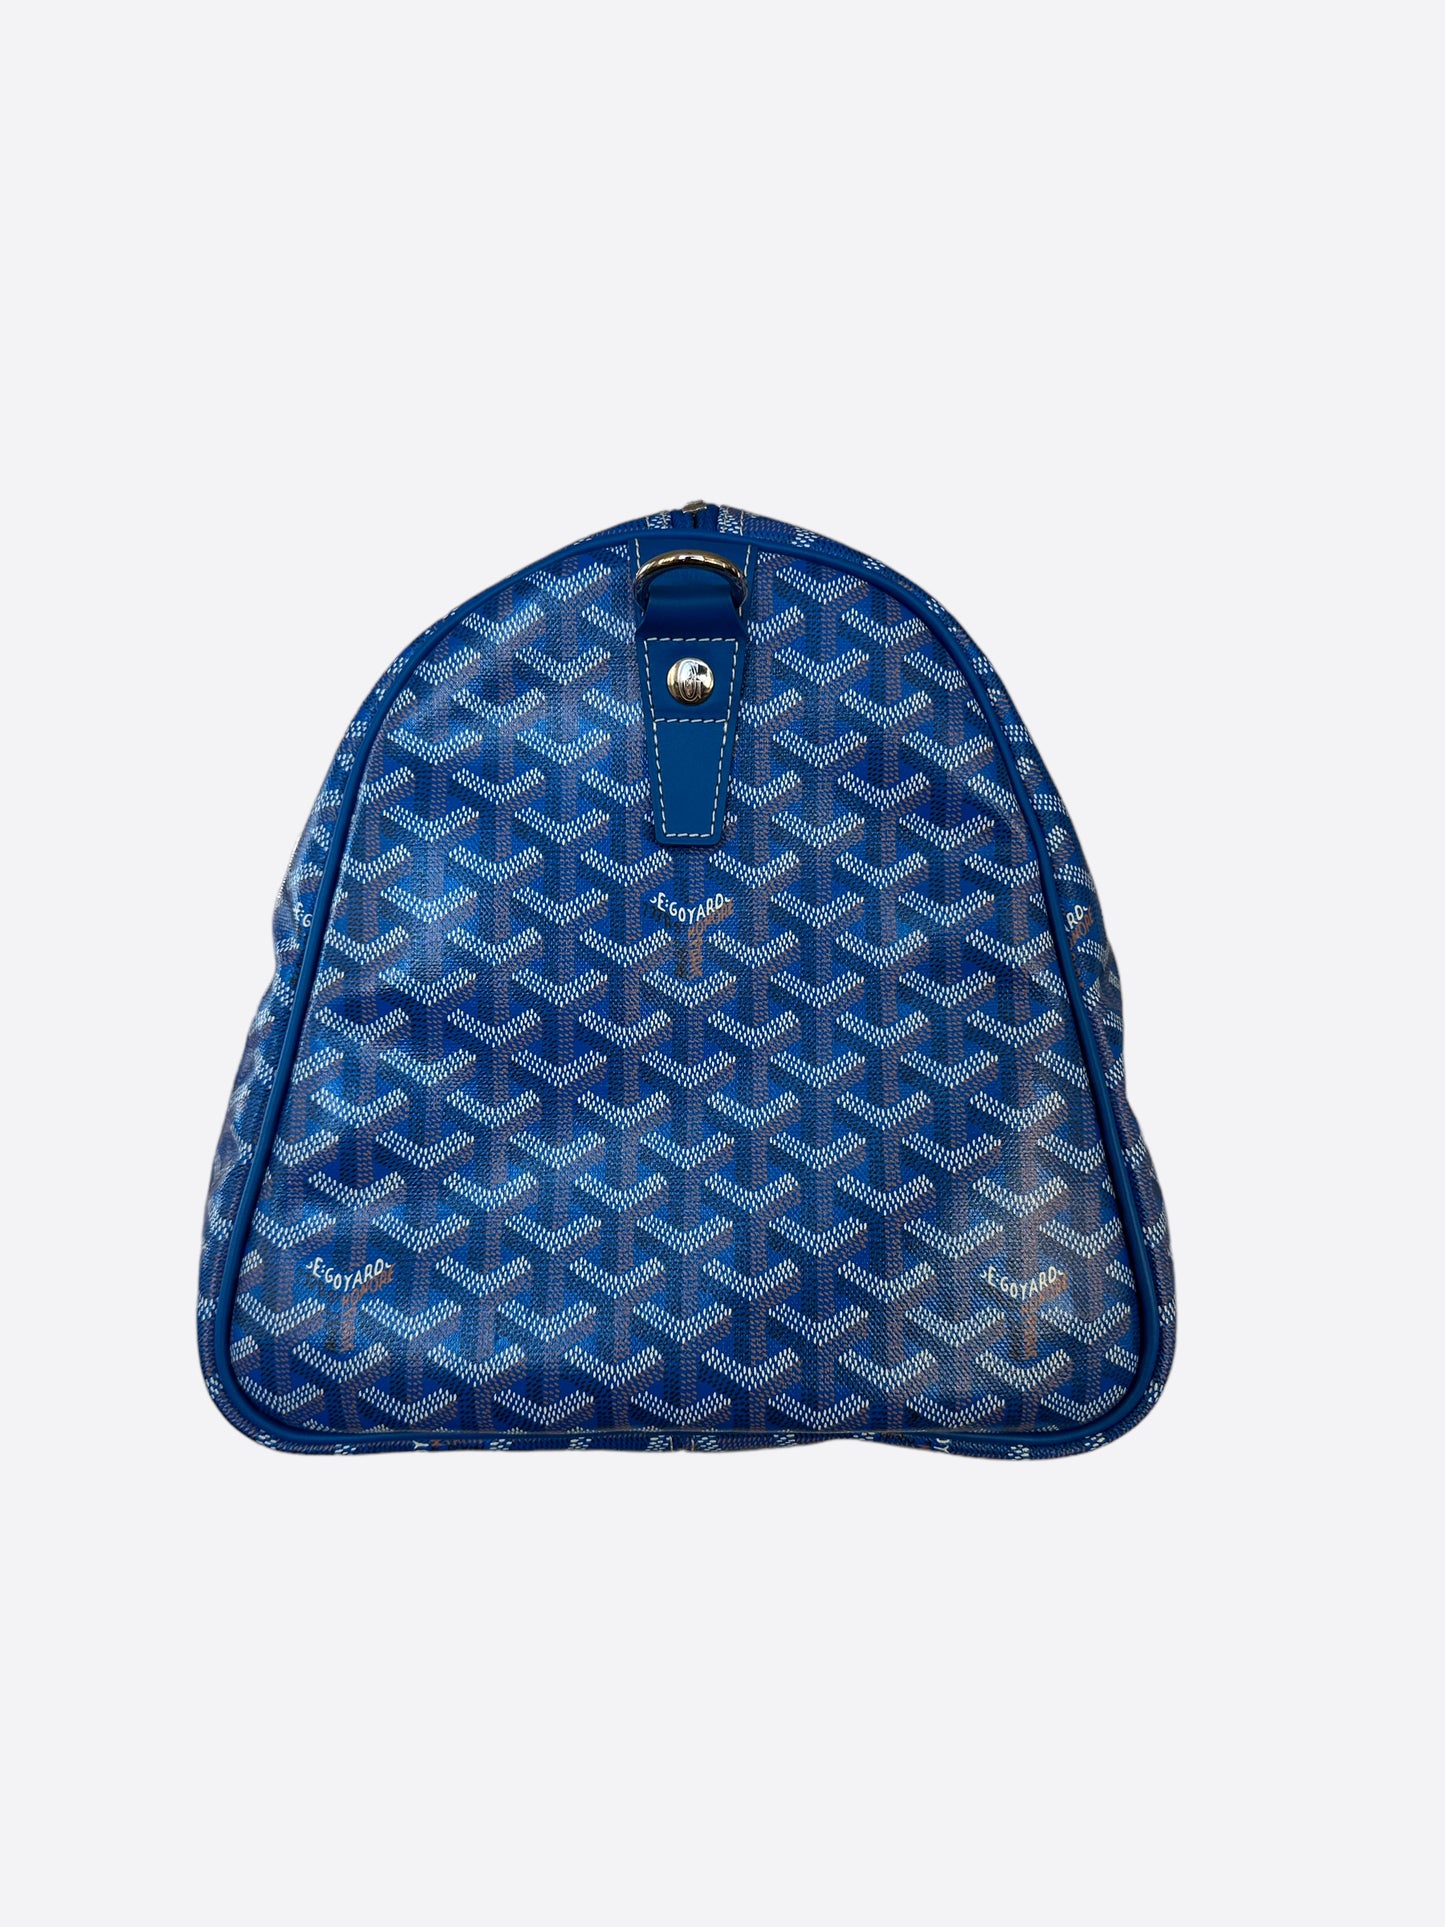 Goyard Blue Goyardine Boston 50 Duffle Bag – Savonches